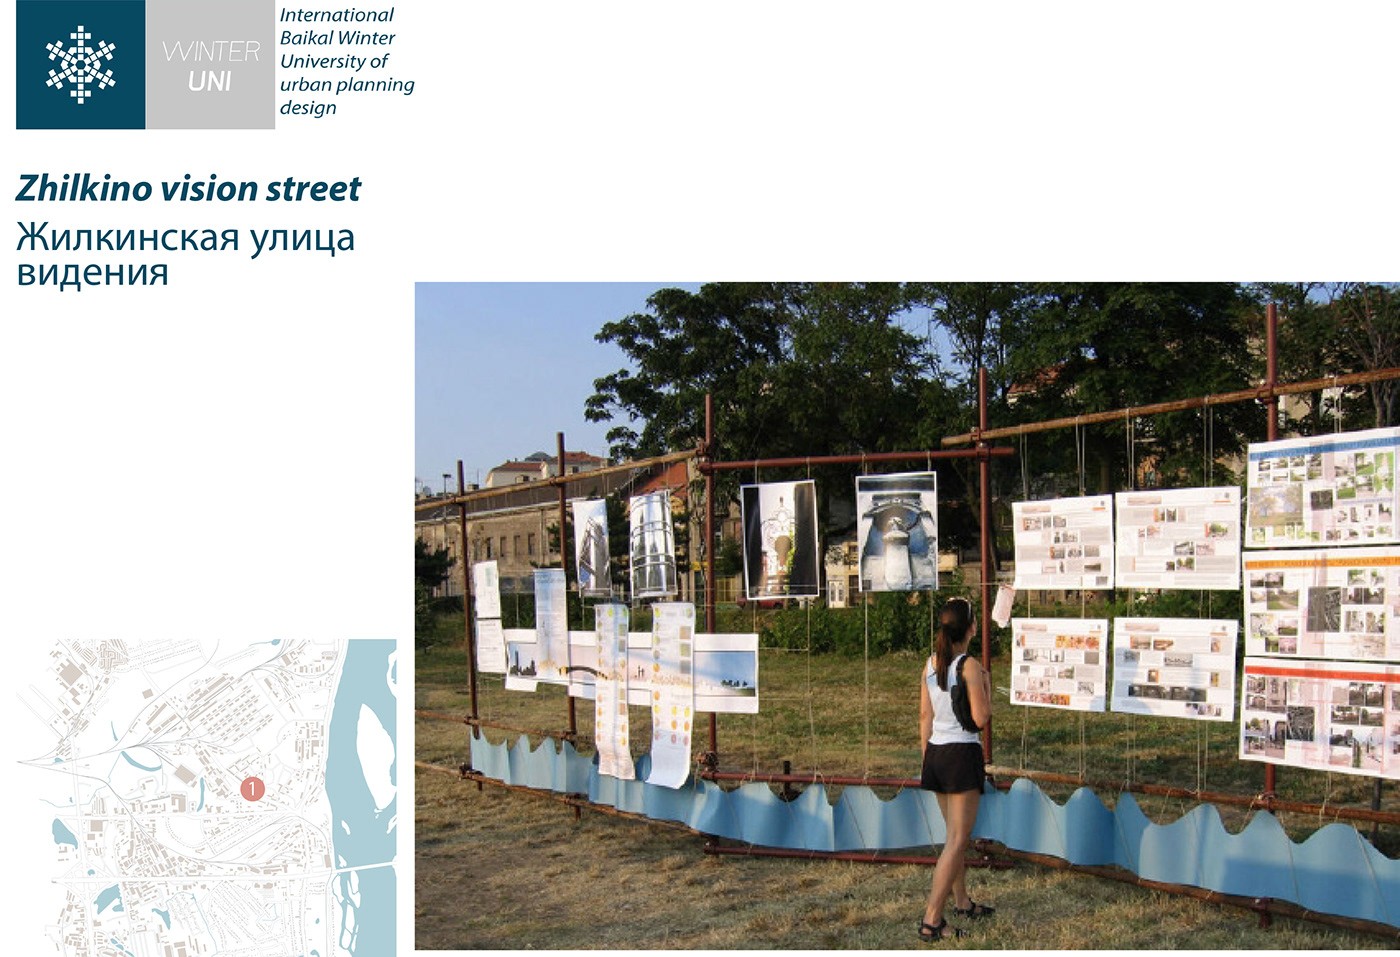 توسعه مجدد مناطق ناراحت کننده (ژیلکینو) |  آزمایشگاه طراحی شهری 19